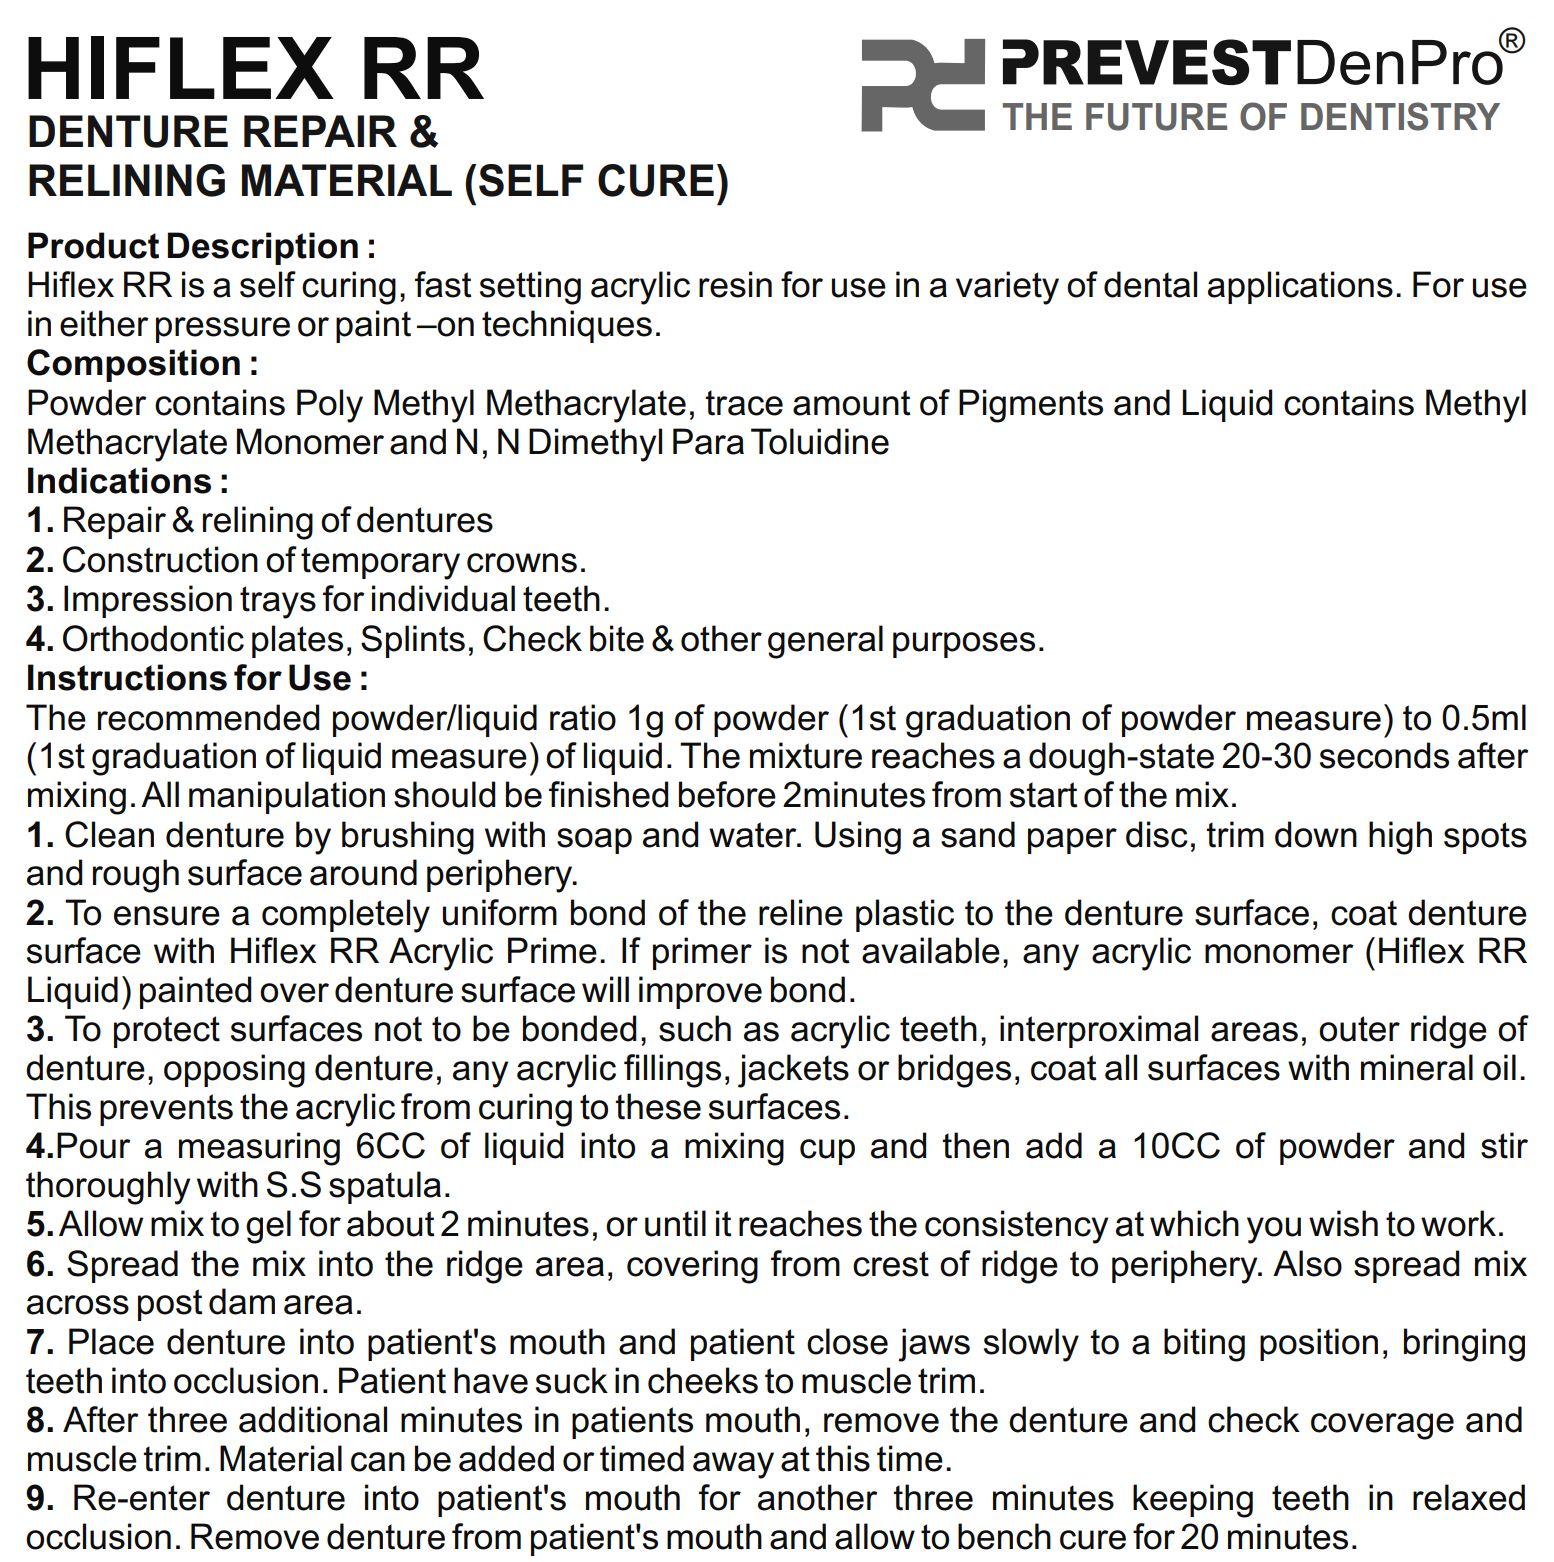 Hiflex RR